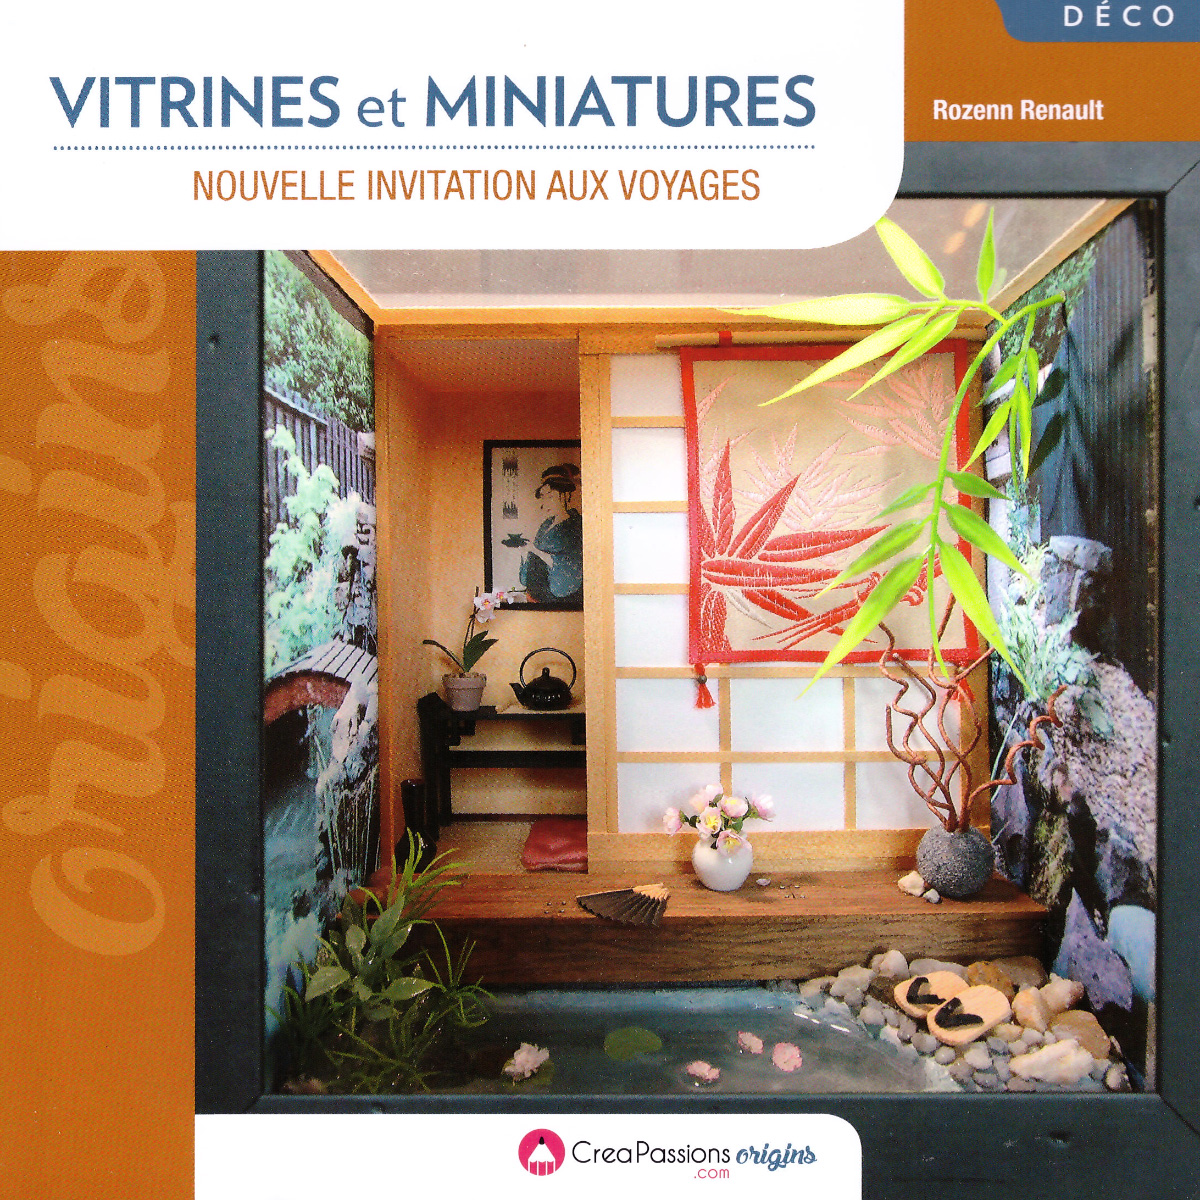 Vitrines et miniatures (Édition 2018) - Rozenn Miniatures